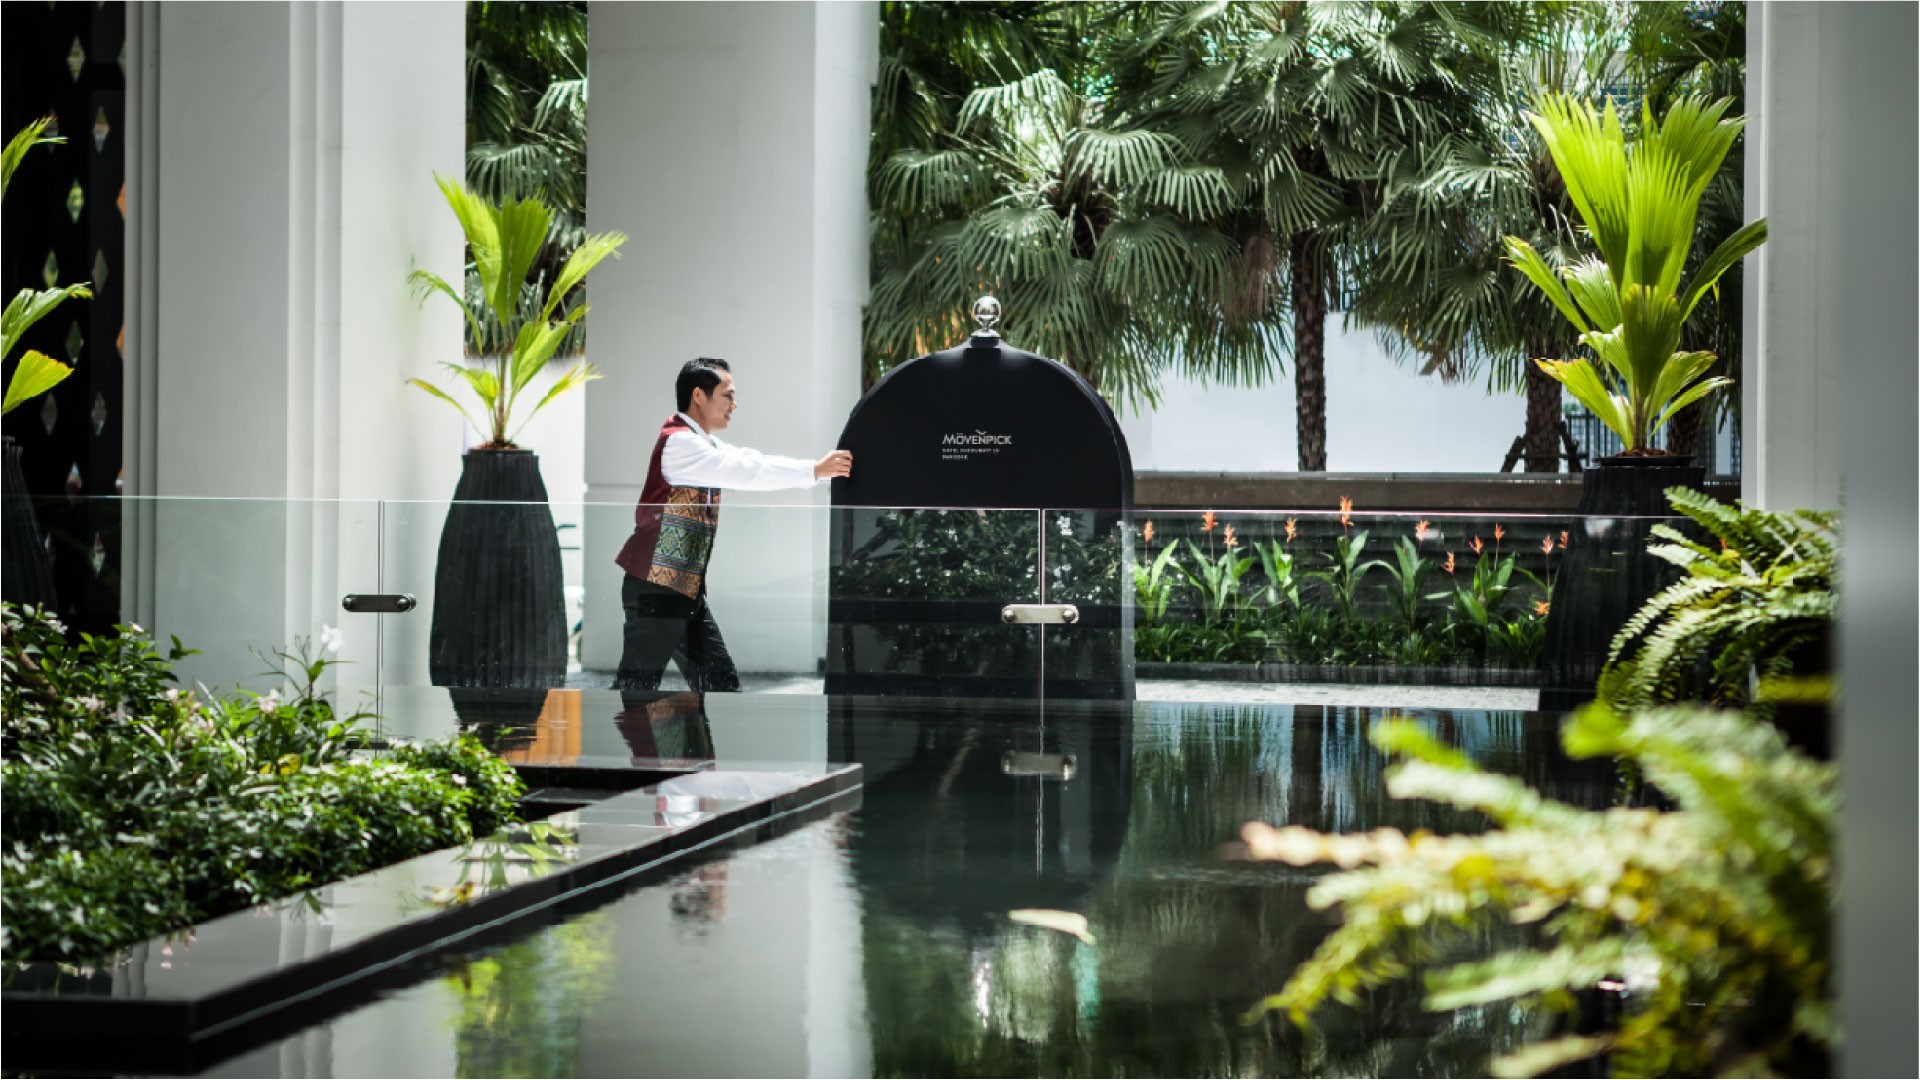 고급스럽고 편안한 방콕 도심 속 오아시스, Mövenpick 호텔 수쿰빗 15에 오신걸 환영합니다.